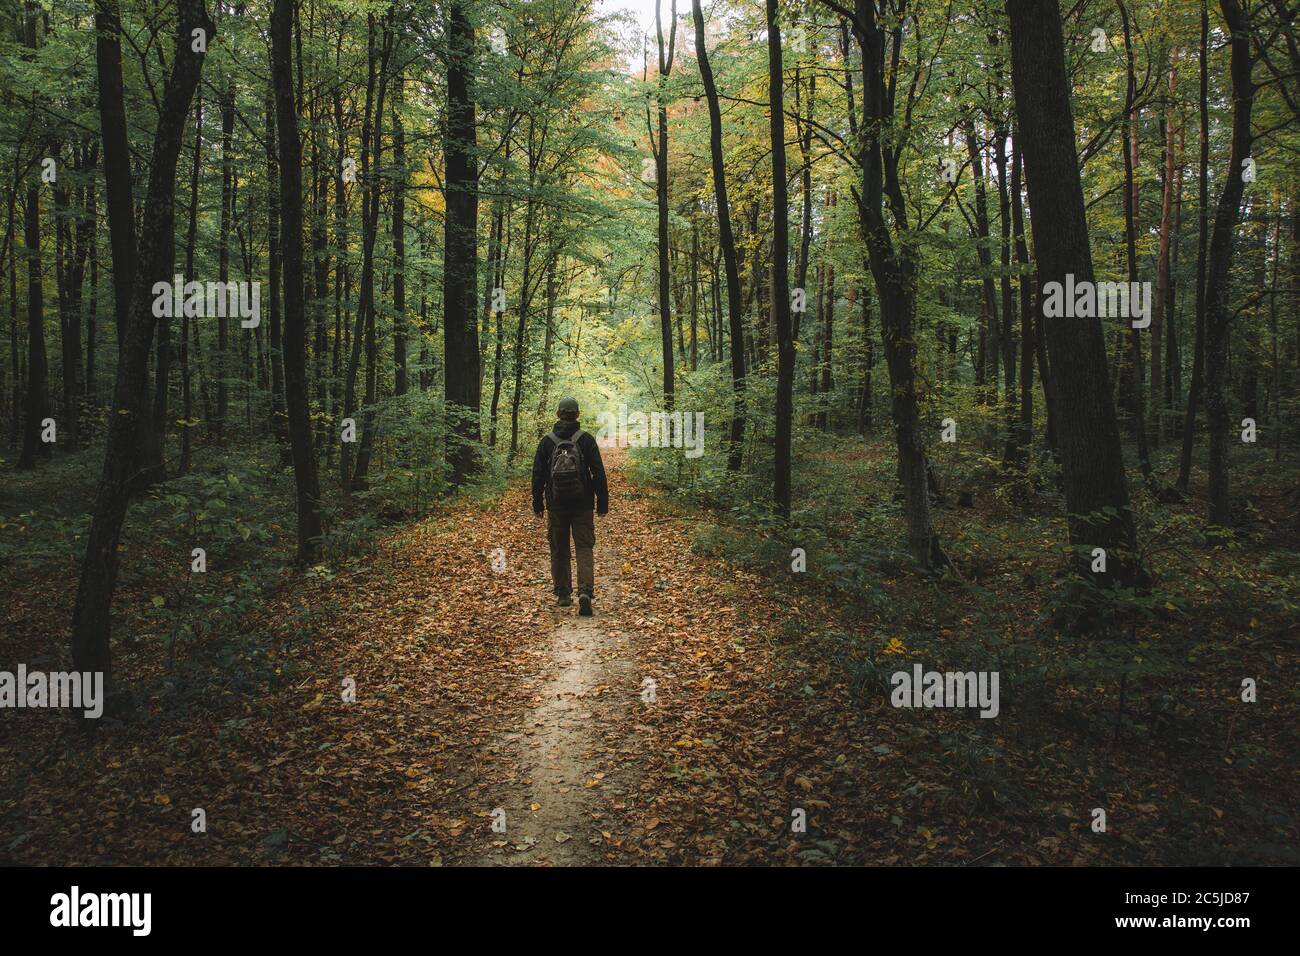 Ein Mann, der einen Weg durch einen dunklen Wald geht Stockfoto